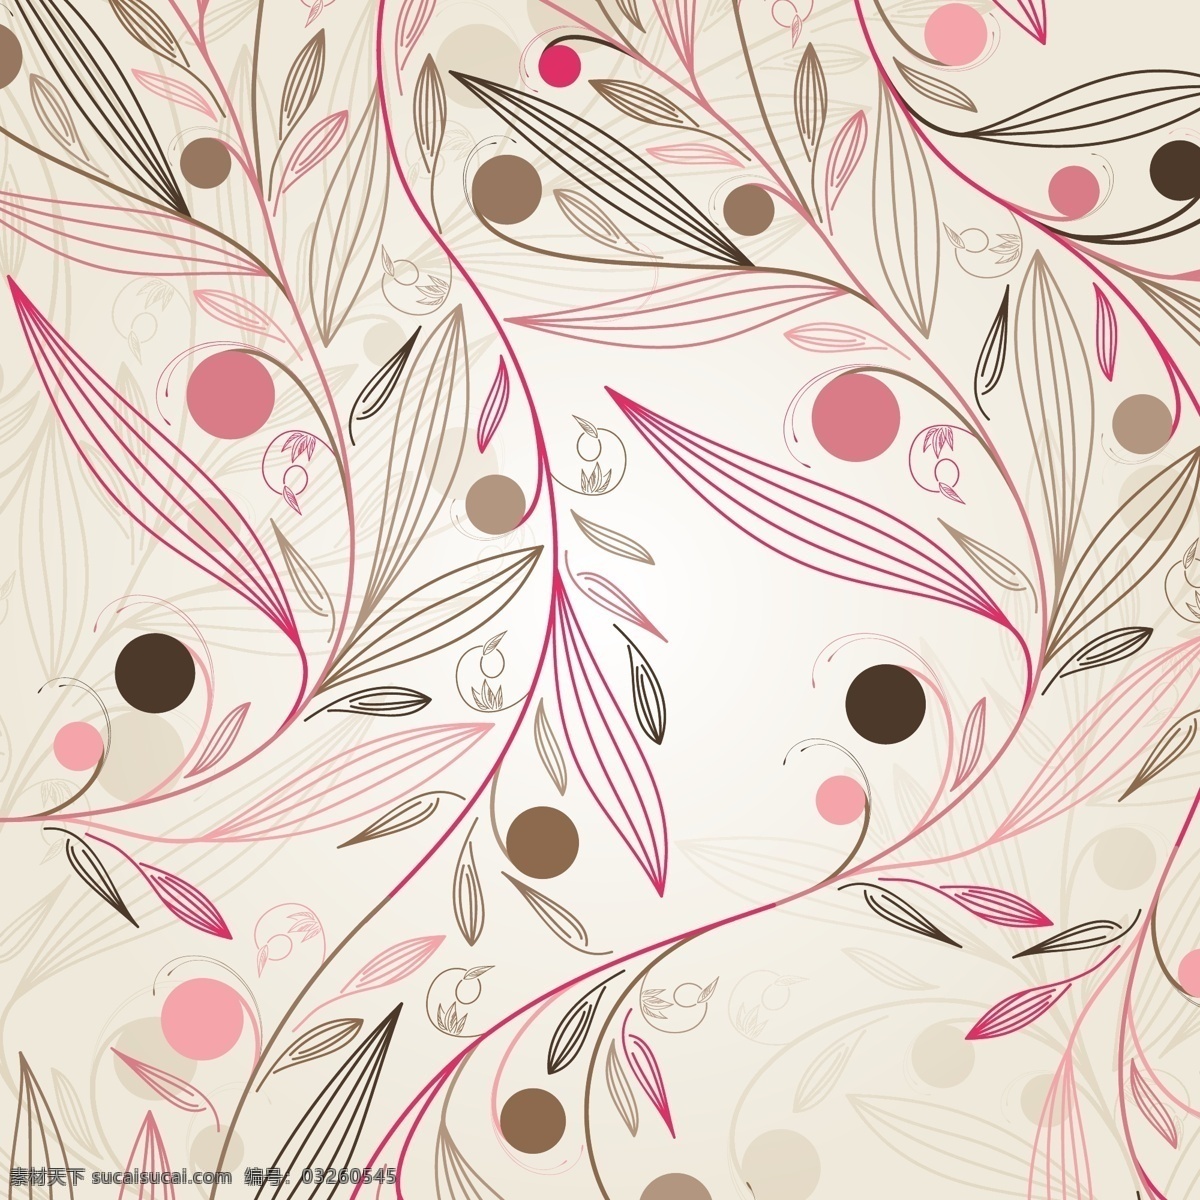 手绘 粉红色 花卉 矢量 背景 web 插画 创意 粉红色的 花 界 免费 病 媒 生物 时尚 独特的 图形 质量 新鲜的 设计手绘 棕色的 摘要 叶 自然 psd源文件